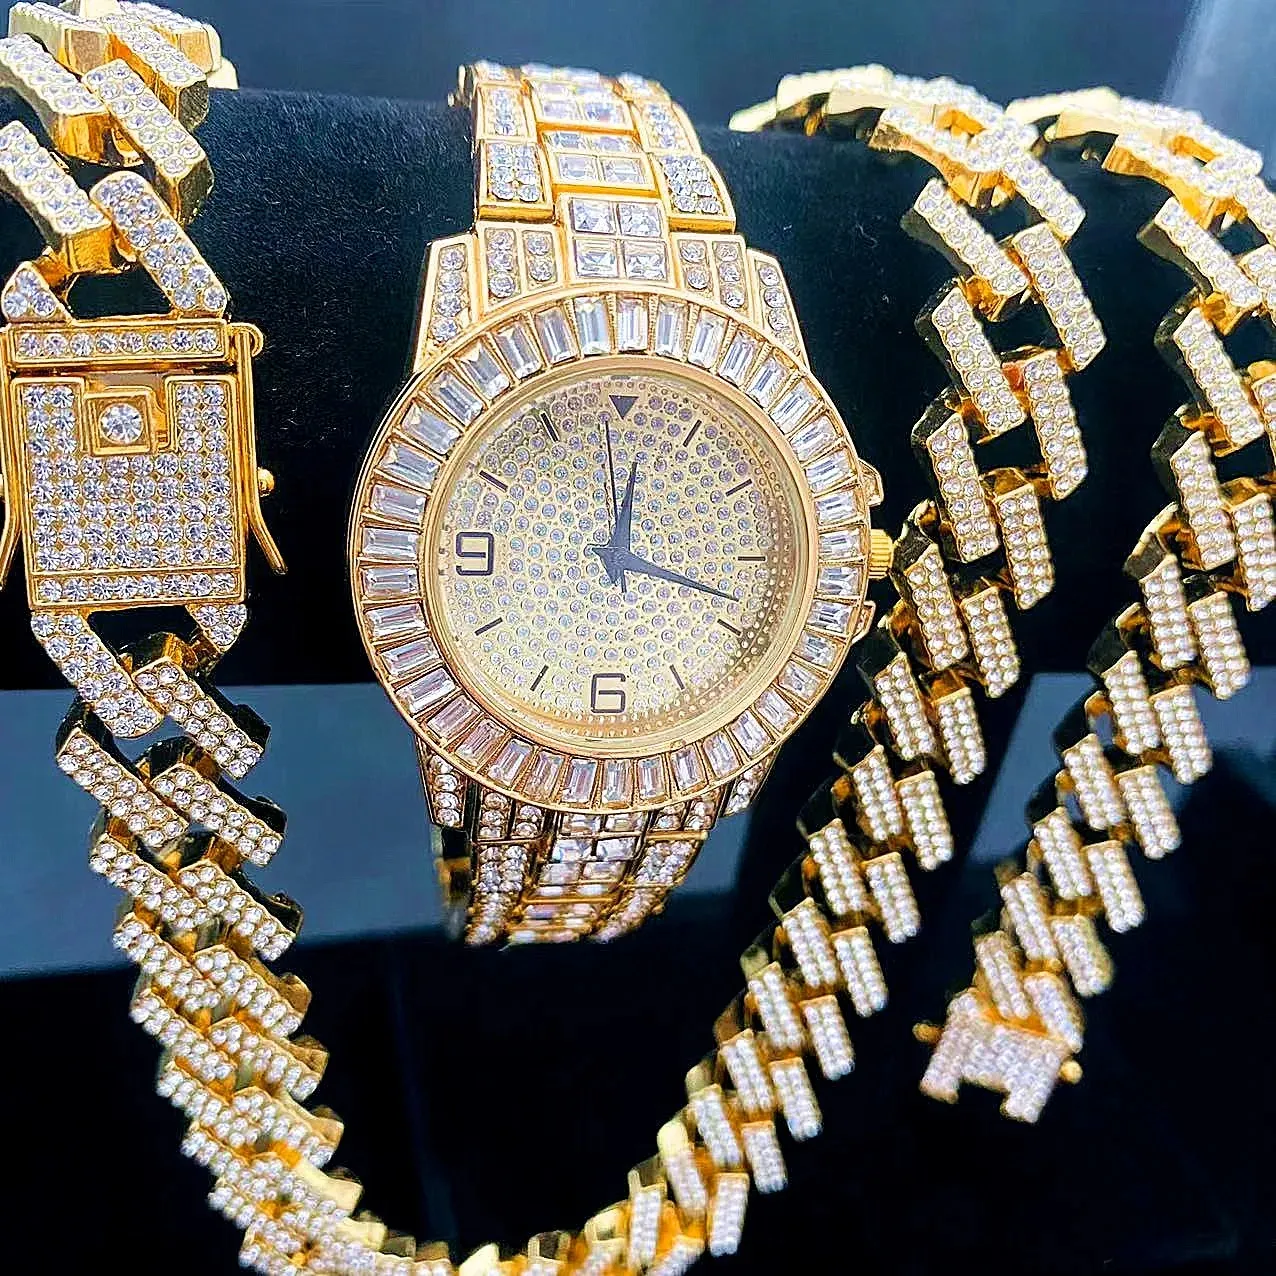 3 teile/satz Hip Hop Diamant Uhr Halskette Armband Schmuck Set für Männer Frauen Bling Gold Silber Diamant Iced Out Box kubanische Kette